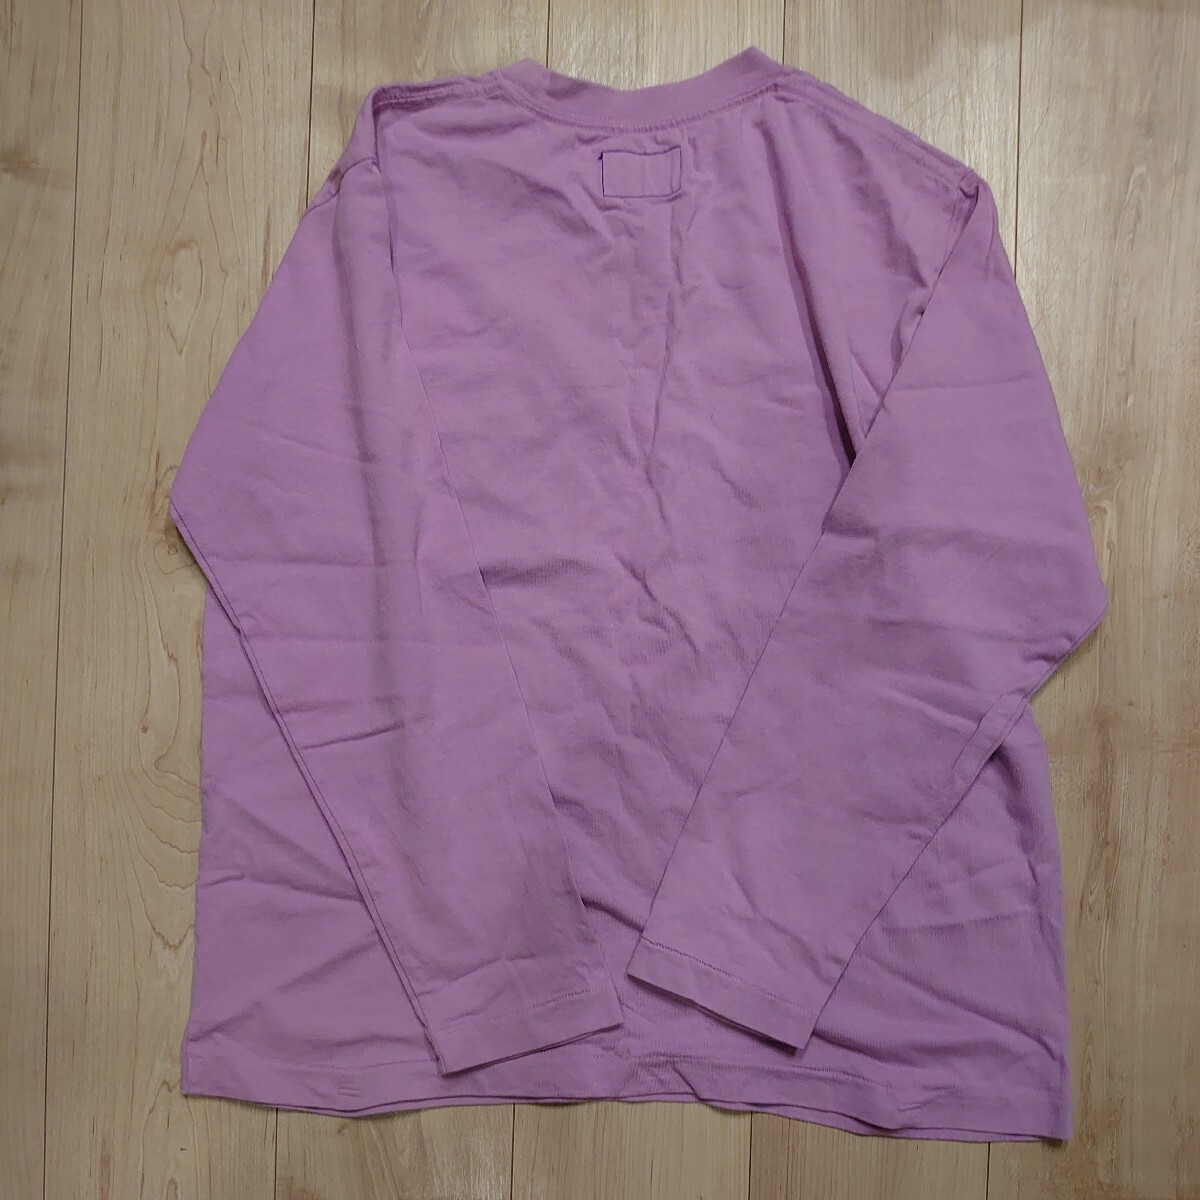 THE NORTH FACE PURPLELABELノースフェイスパープルレーベル NT3802N ポケットロングTシャツ メンズSサイズ ピンクの画像6